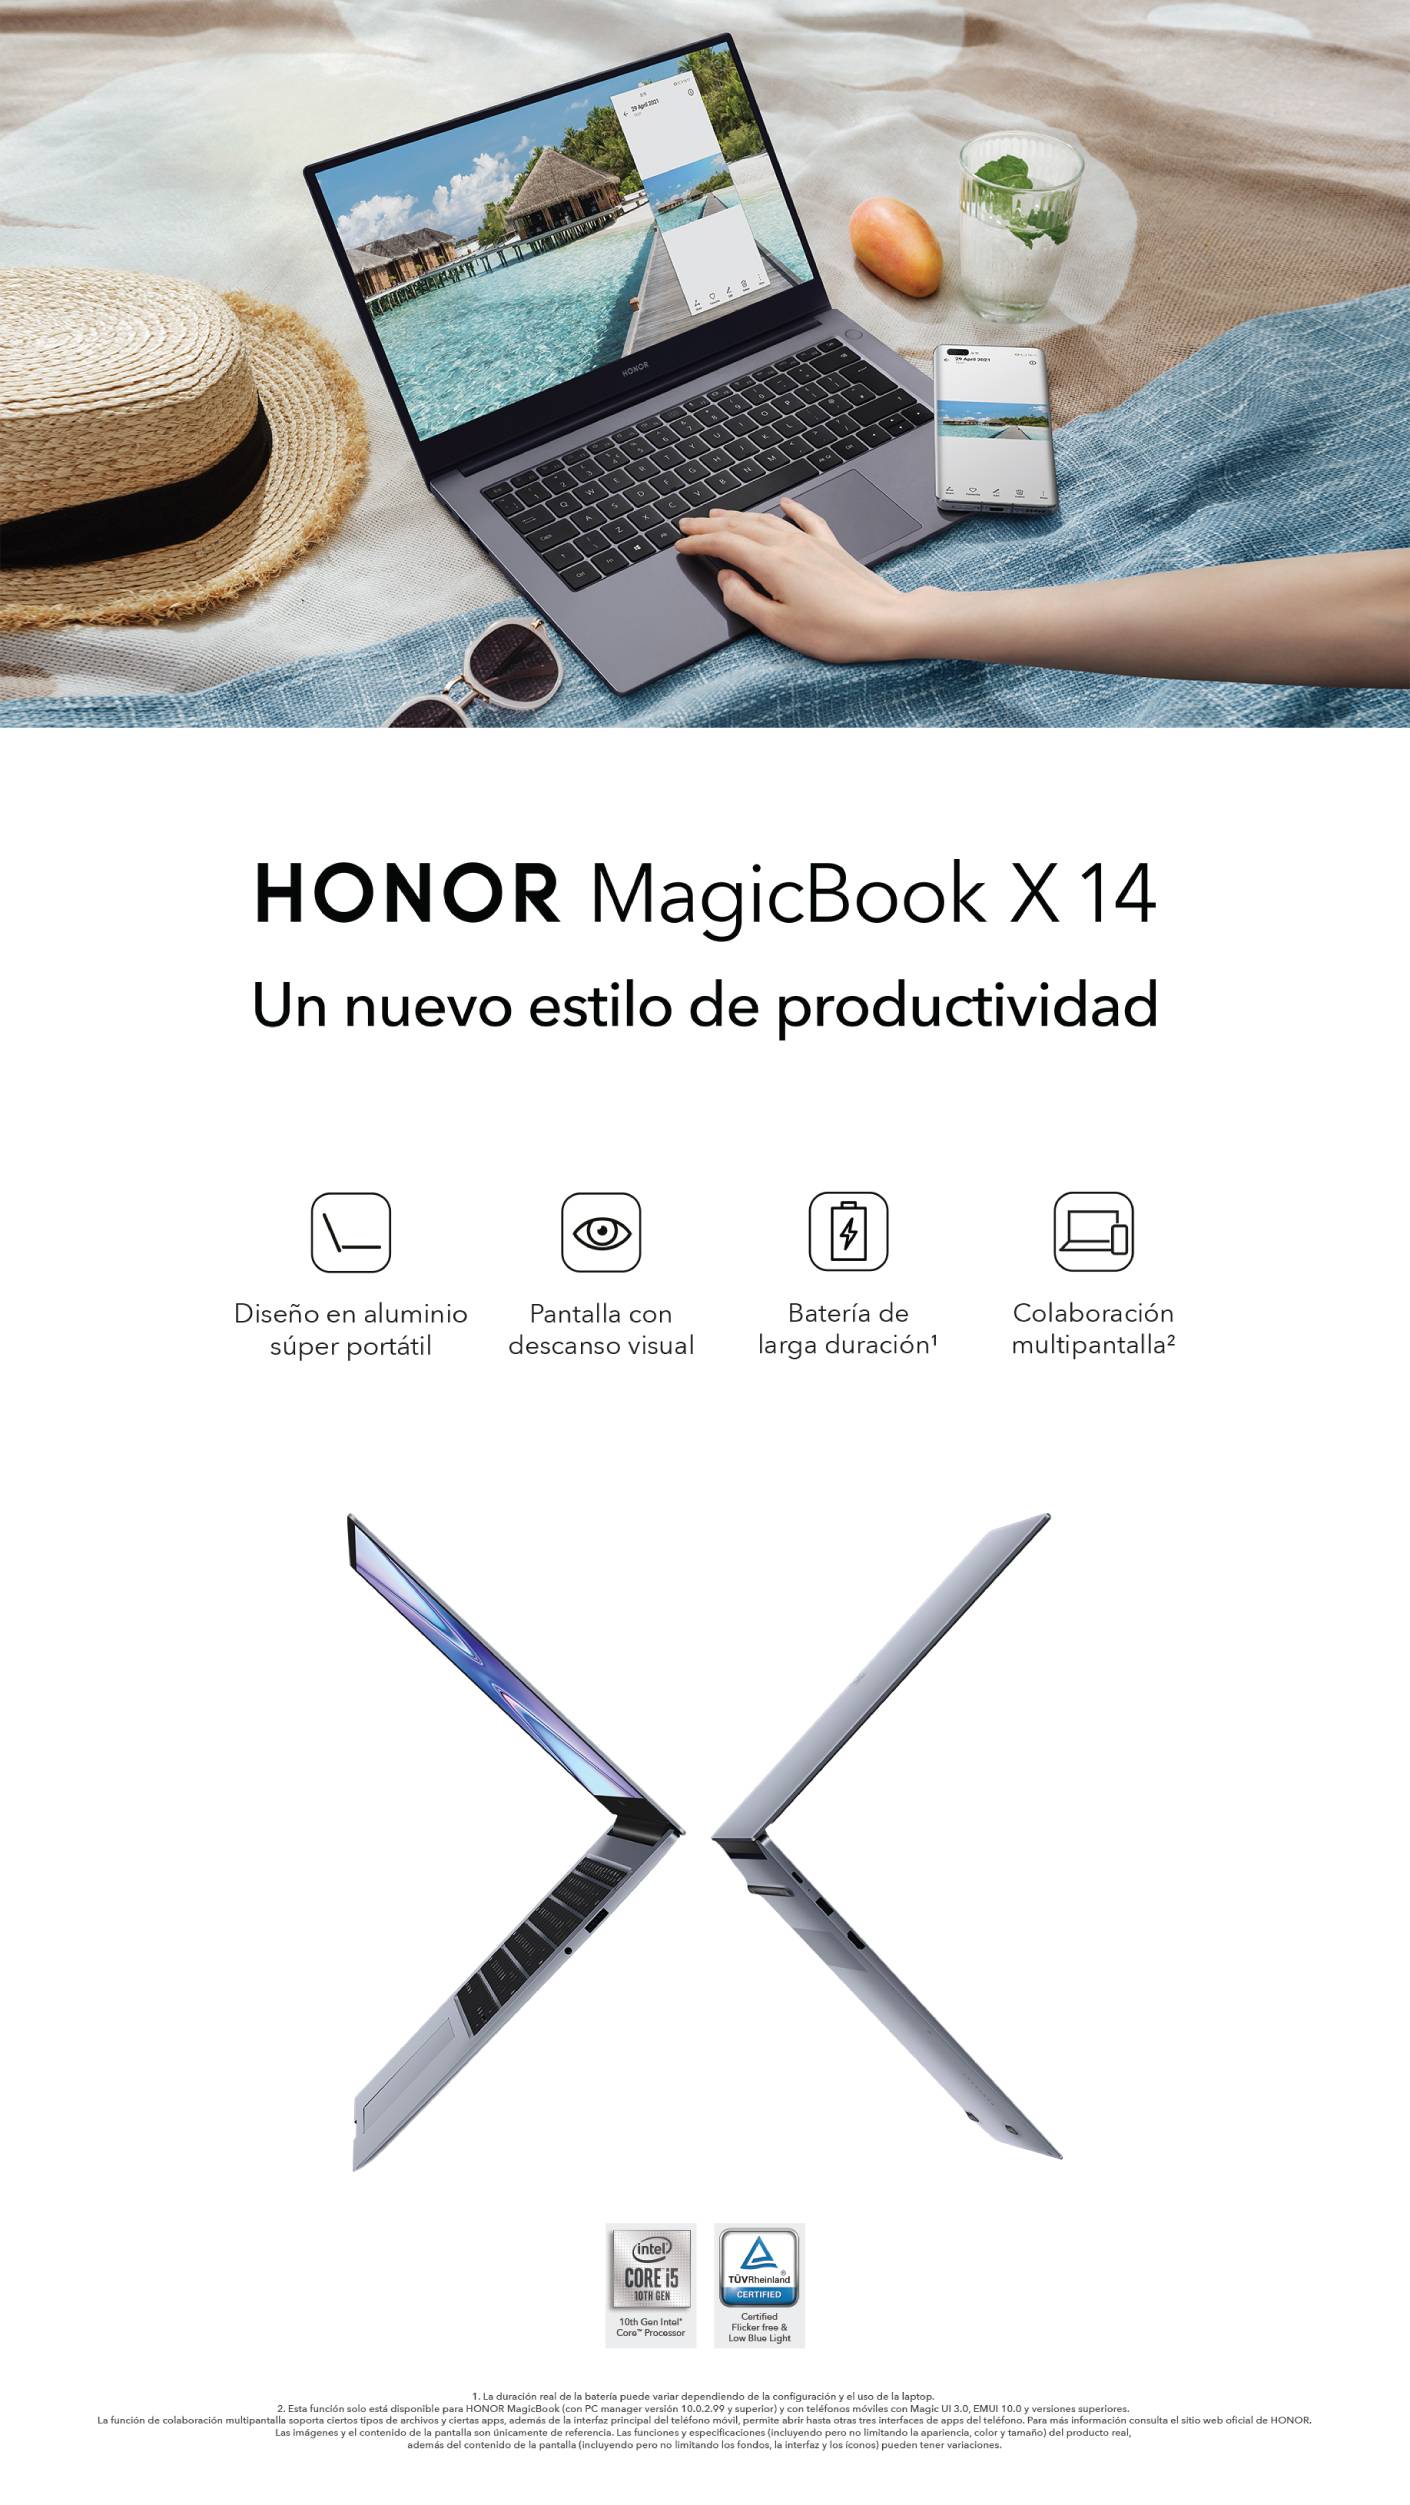 HONOR MagicBook X14 - Un nuevo estilo de productividad